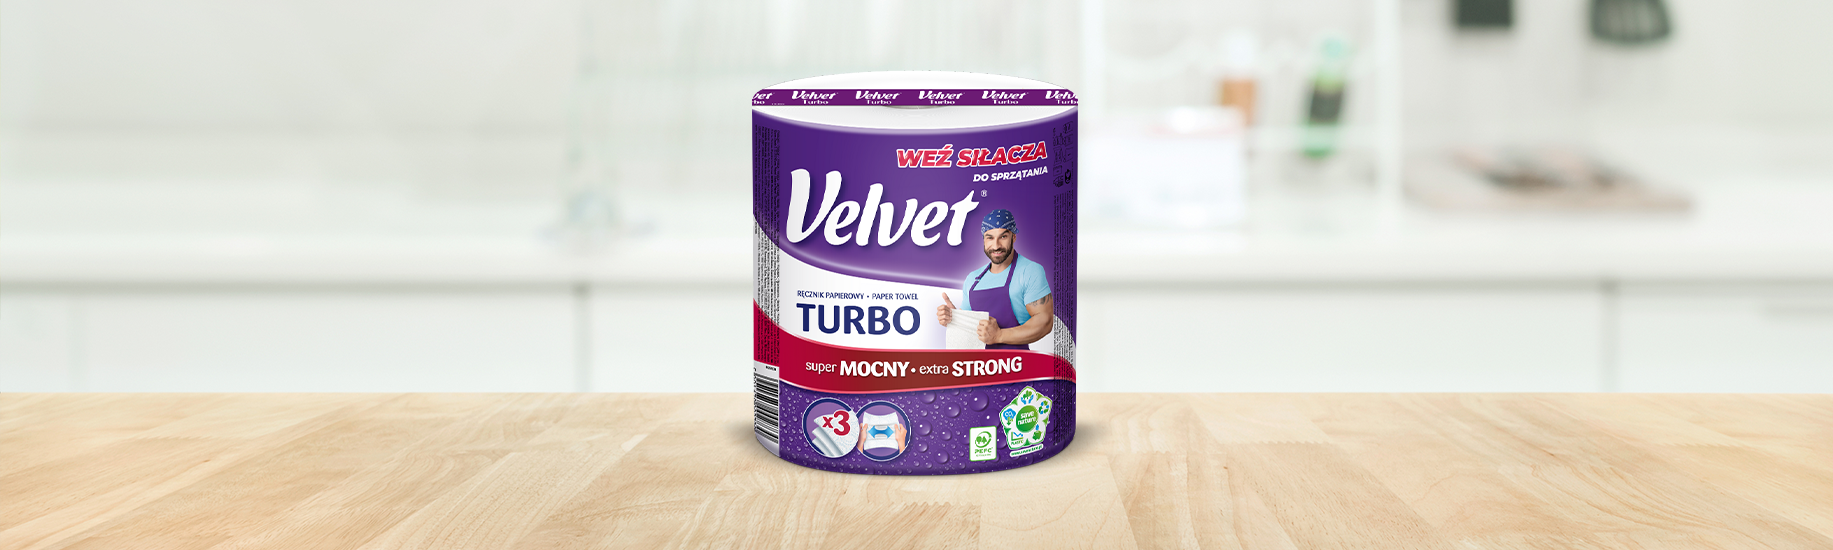 5 tricków z wykorzystaniem ręcznika papierowego Velvet Turbo podczas sprzątania